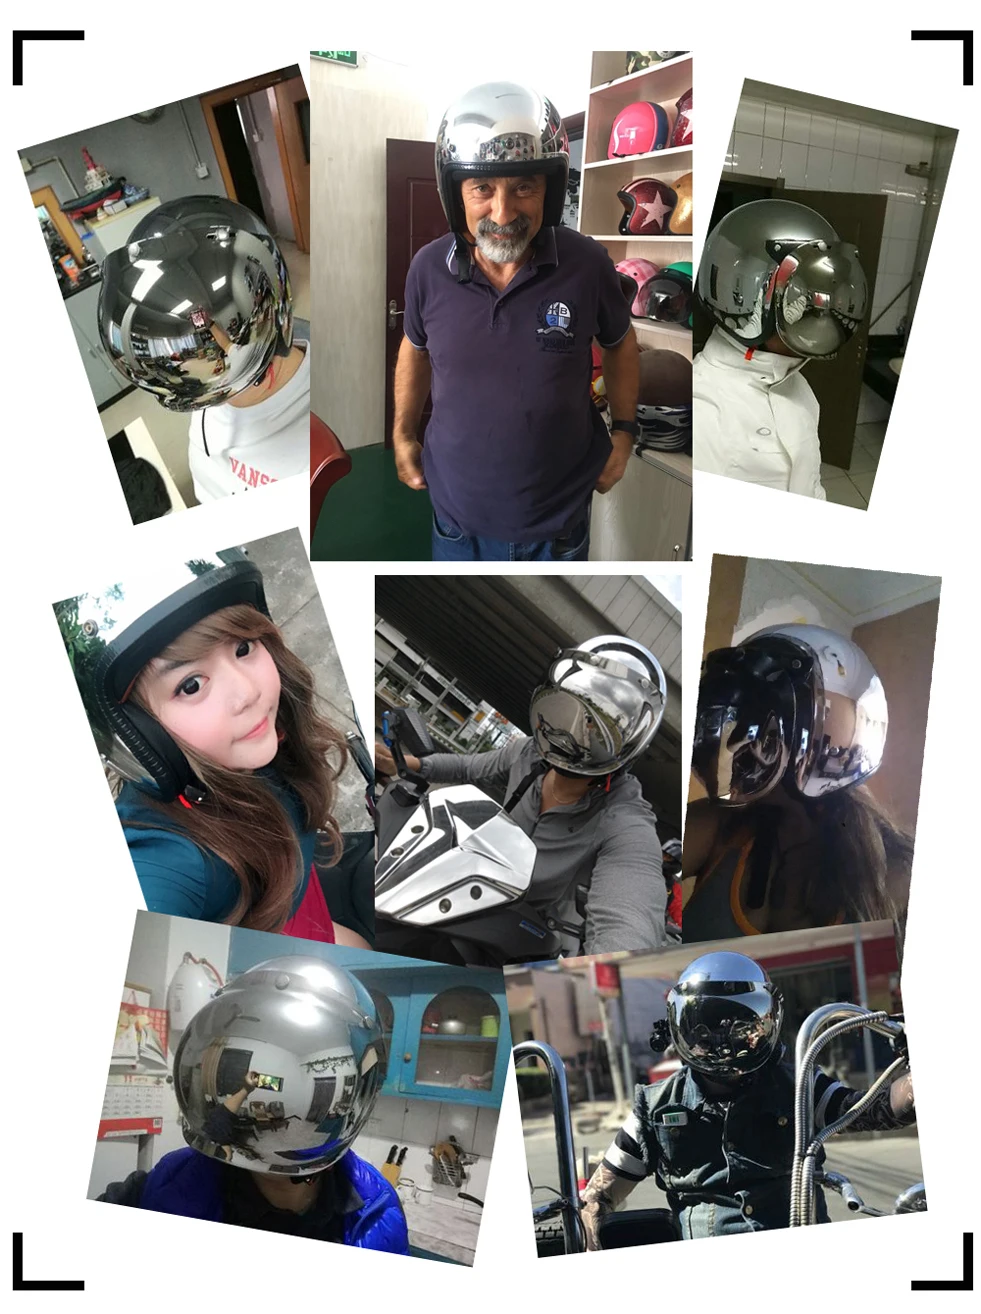 Винтажный зеркальный мотоциклетный шлем для Кафе racer jet capacetes de moto ciclista серебристая, хромированная vespa cascos para moto